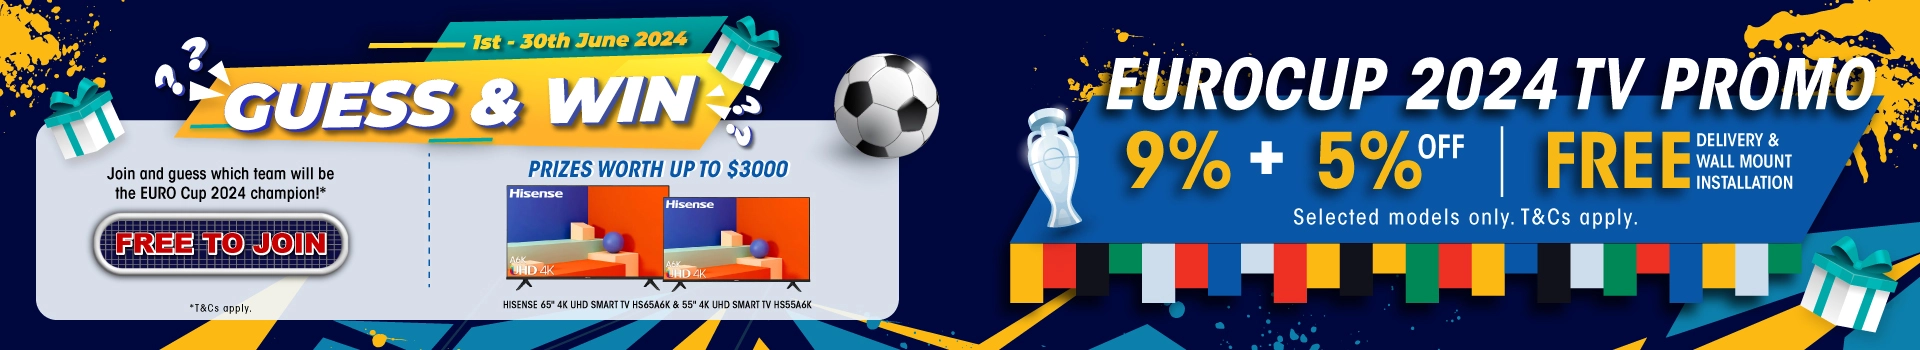 UEFA Eurocup Promotion